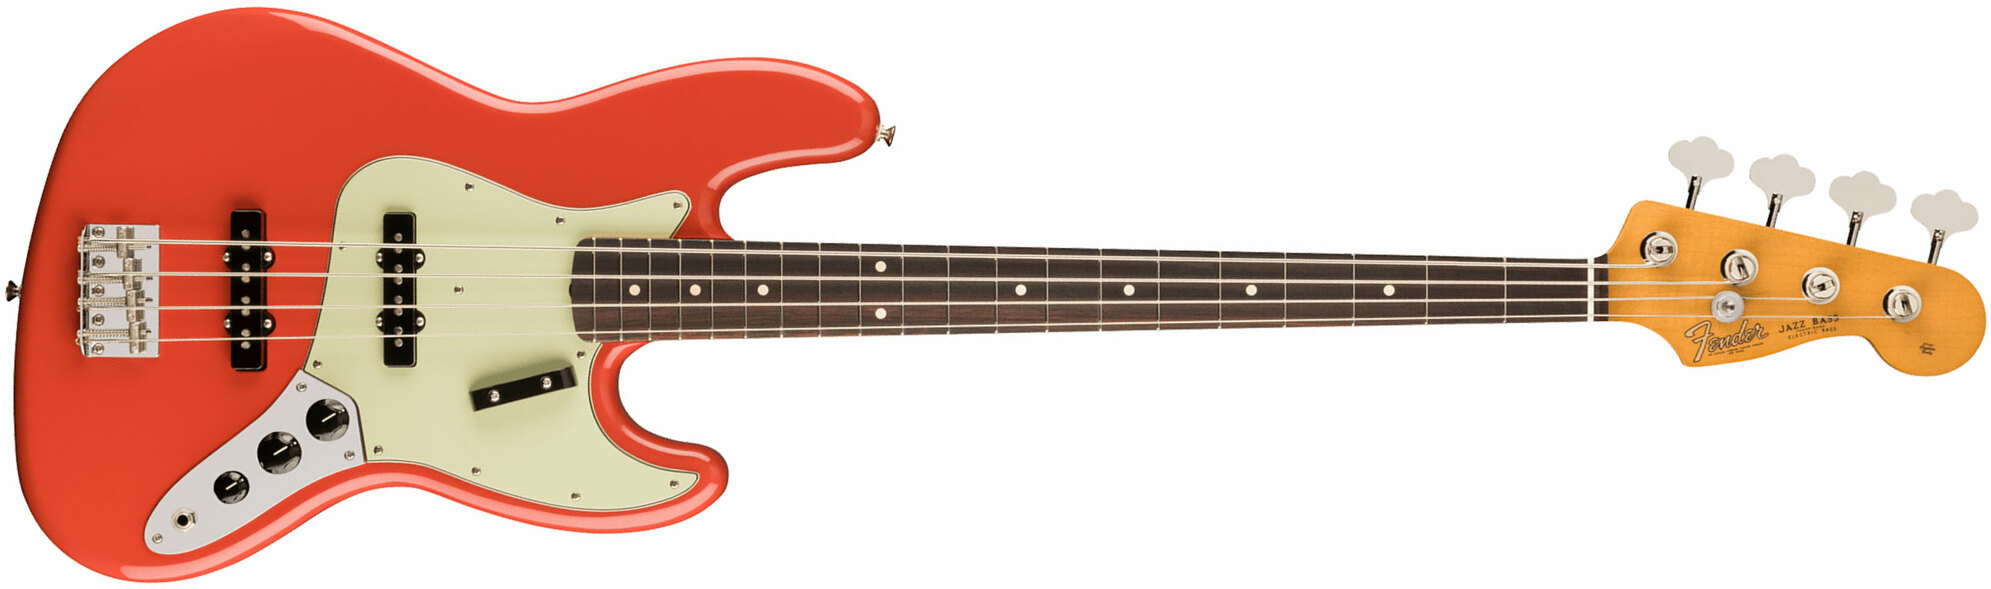 Fender Jazz Bass 60s Vintera Ii Mex Rw - Fiesta Red - Solid body elektrische bas - Main picture